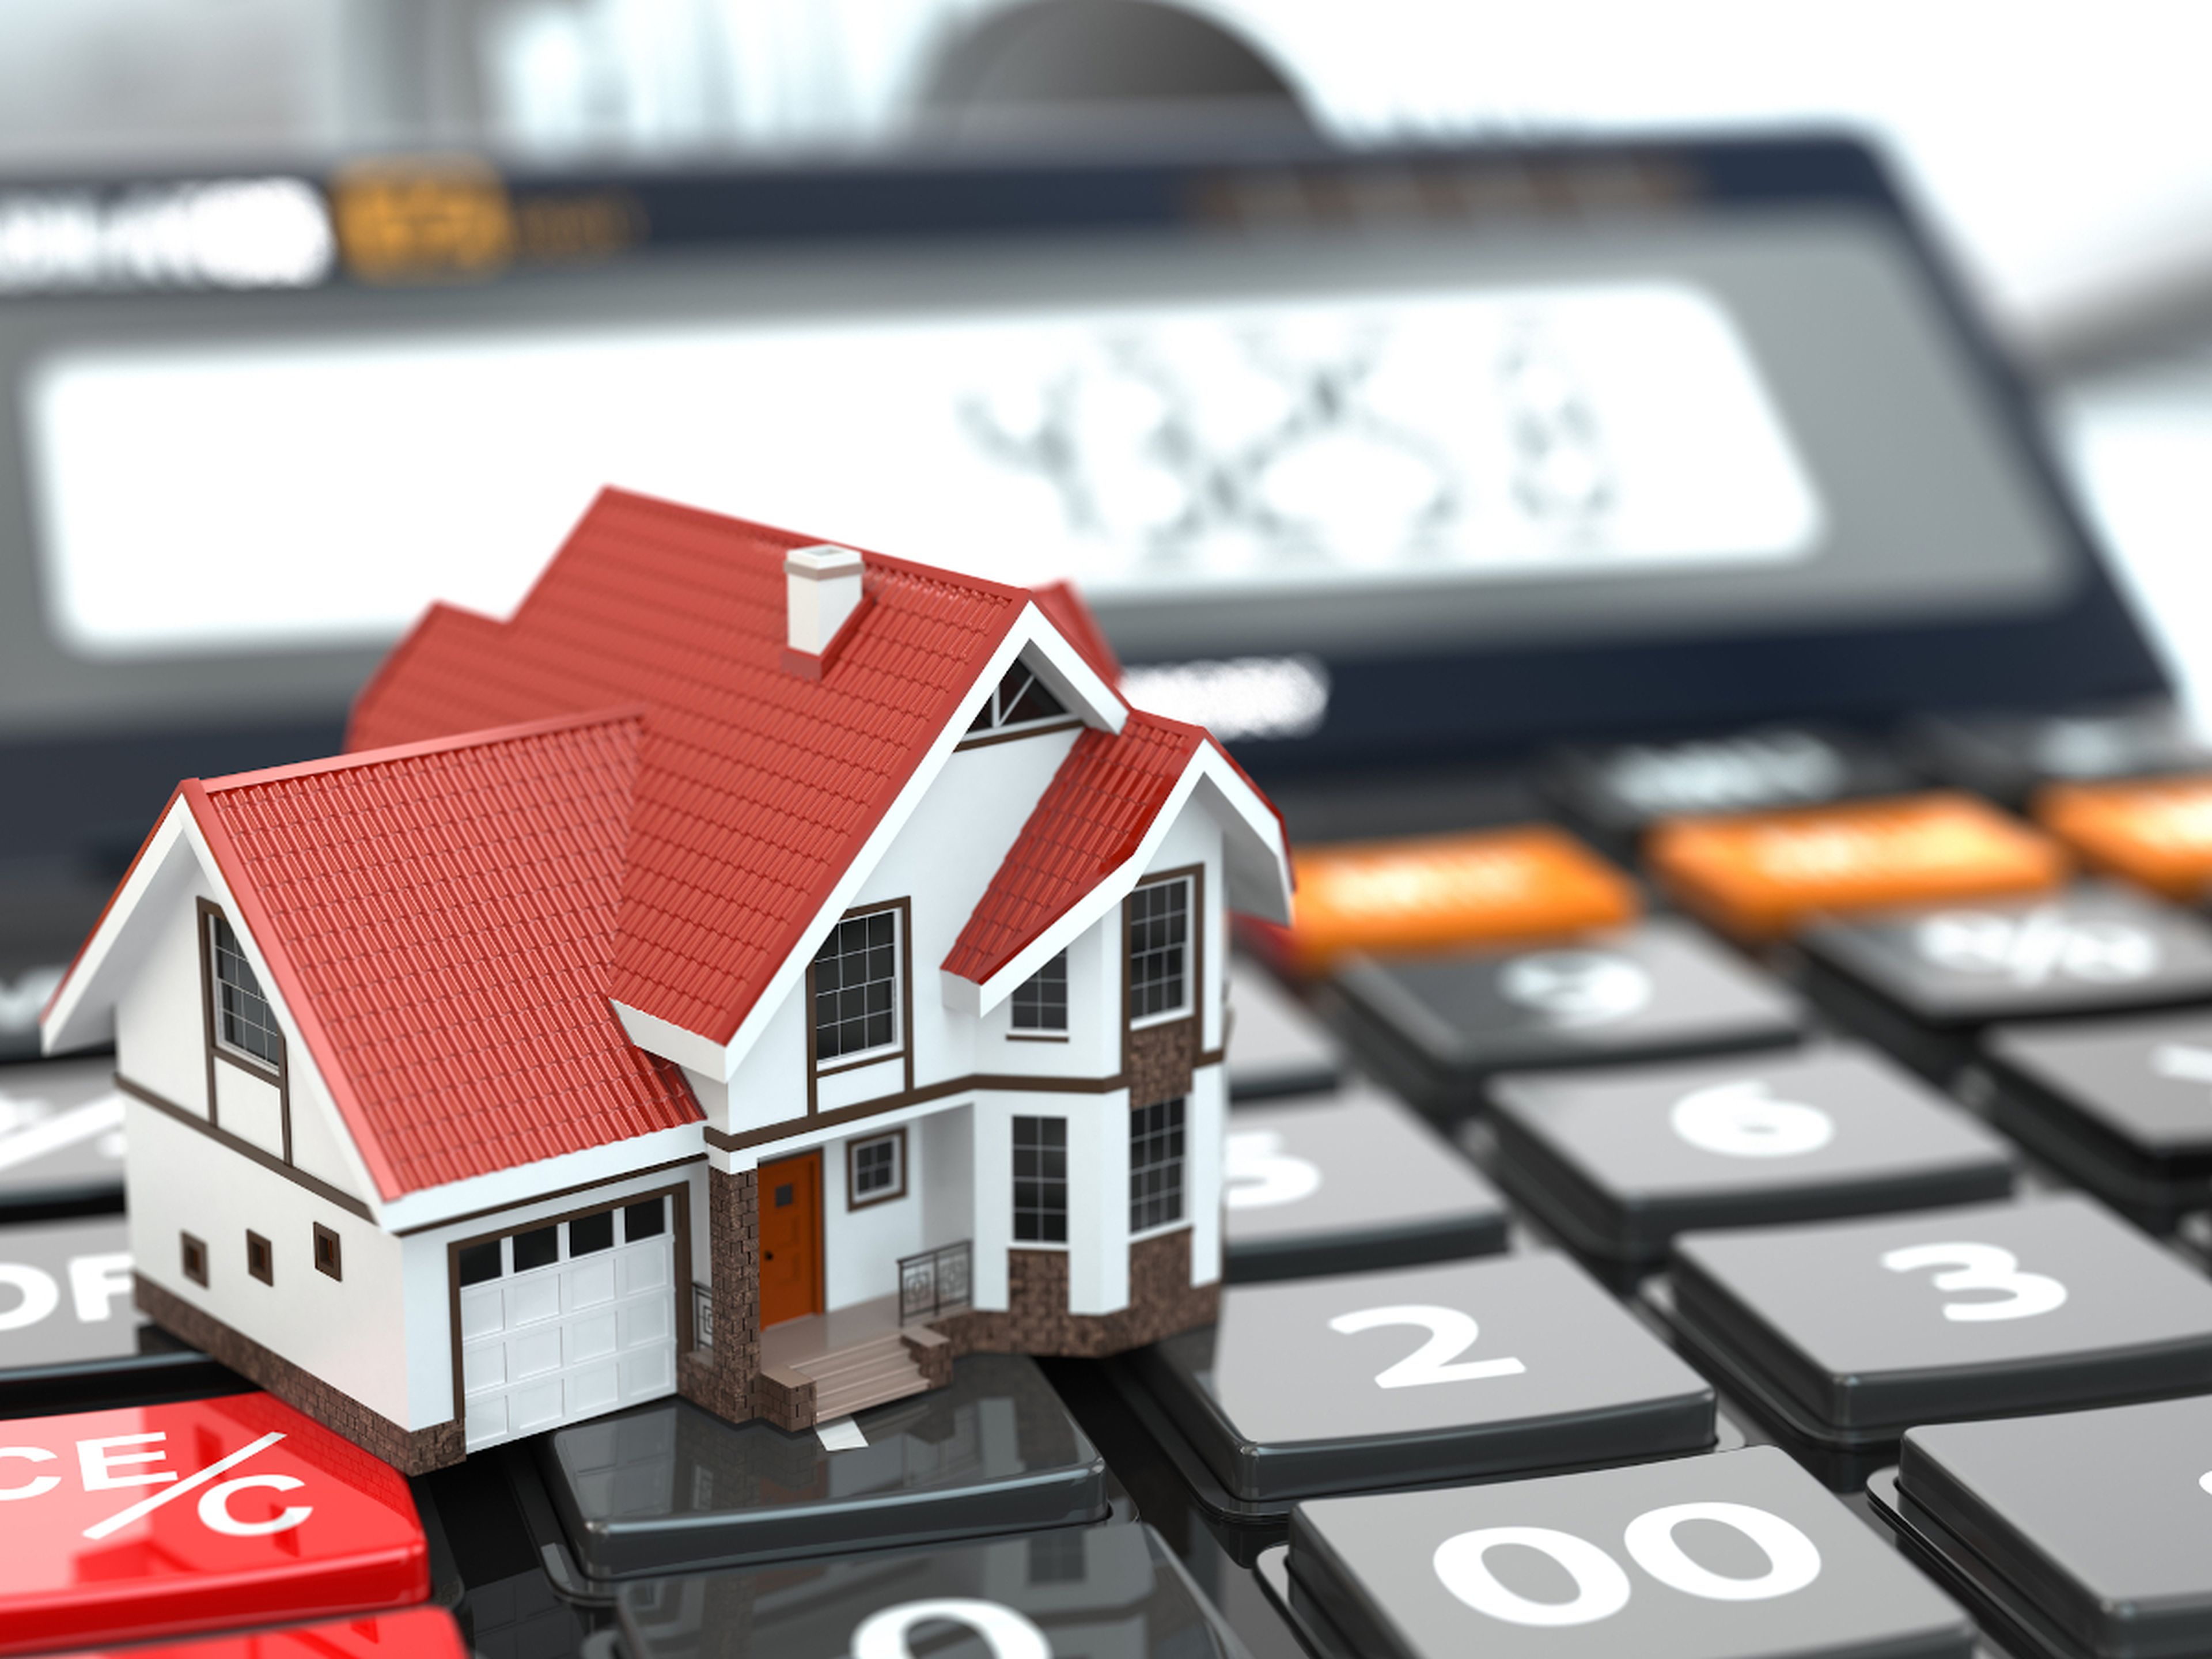 Hipoteca, gastos del hogar